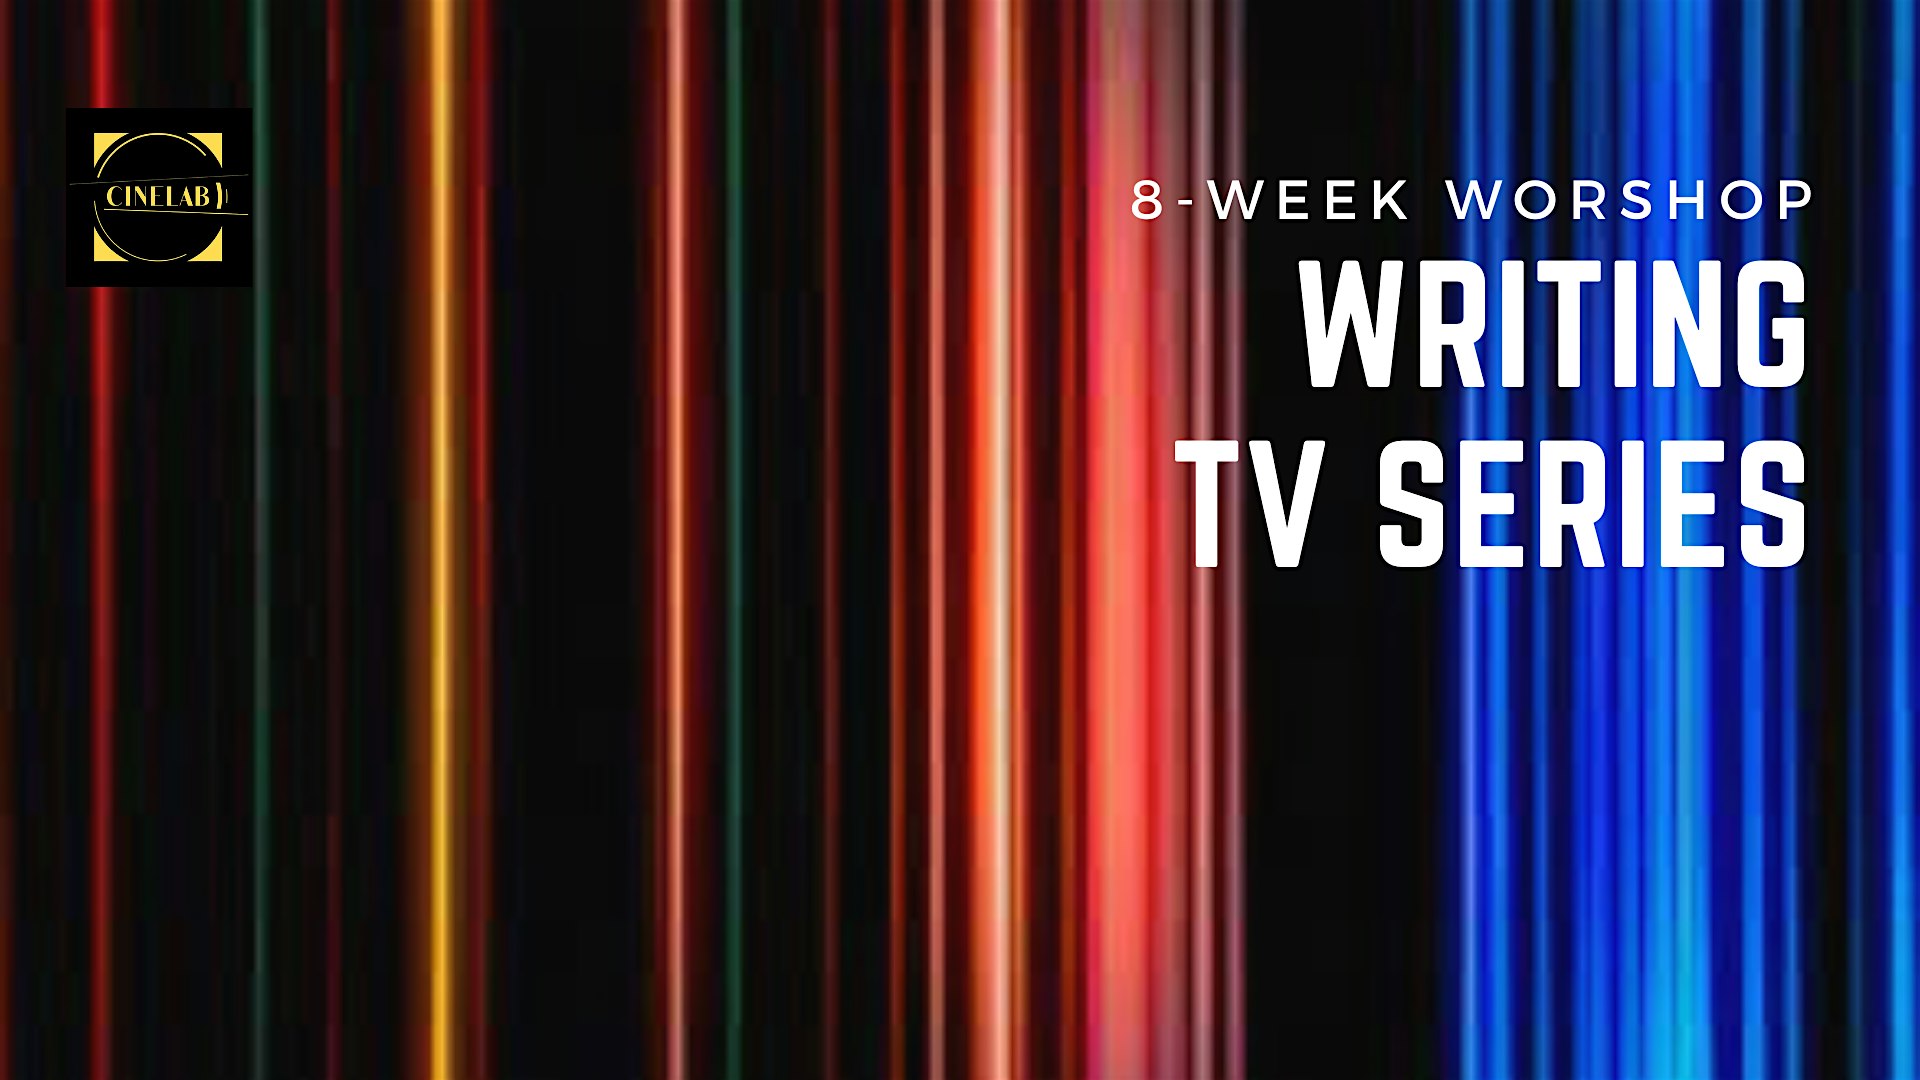 Writing Tv series: 8-week wokshop